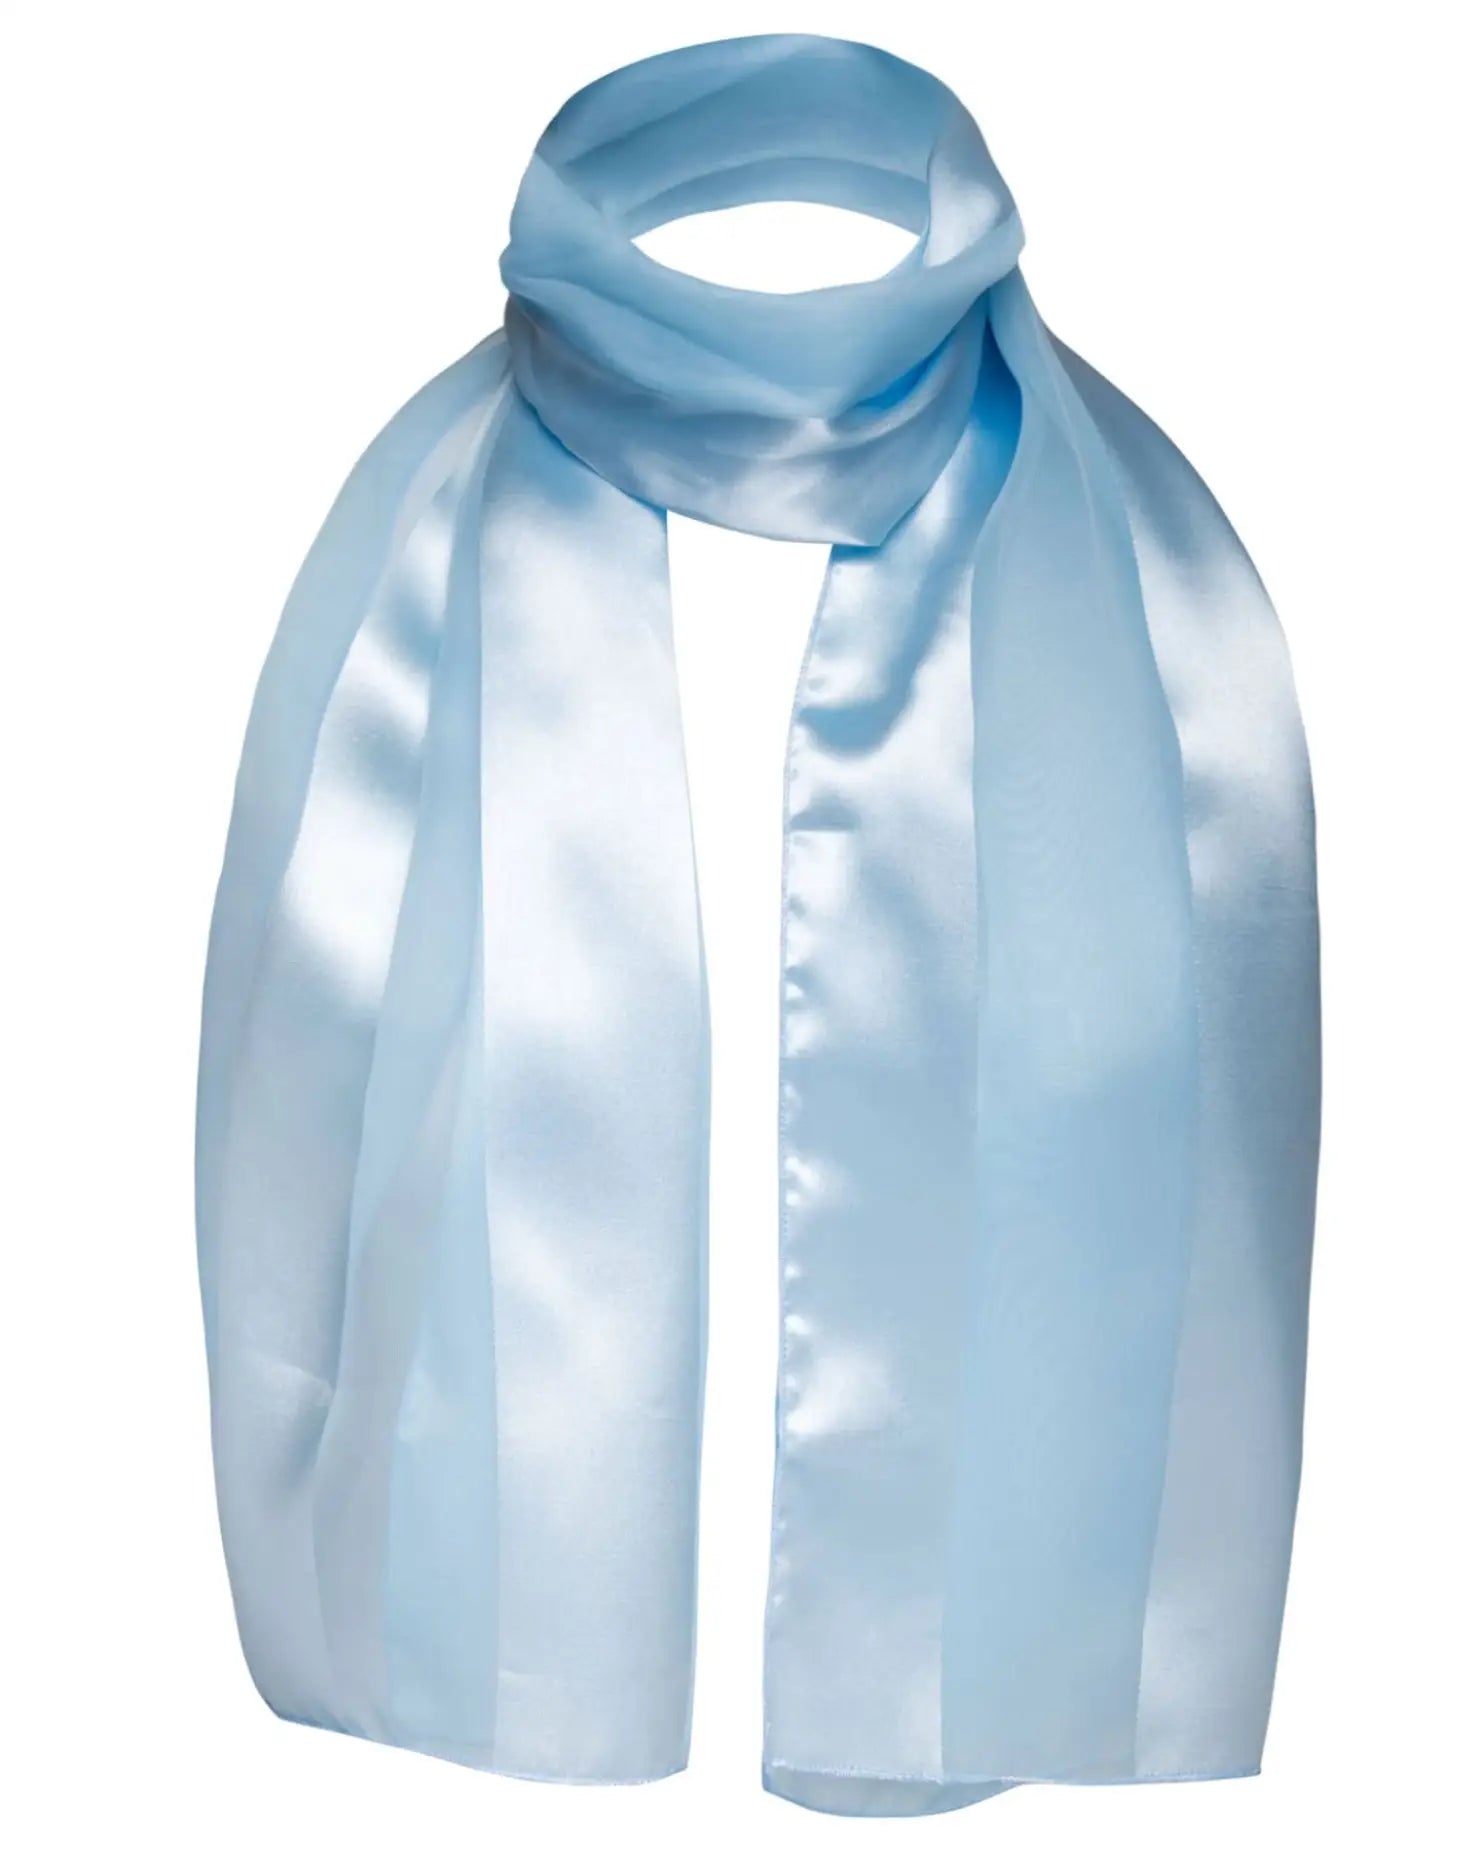 Light blue satin stripe scarf - Solid Shimmering Satin Stripe Scarf - Lightweight